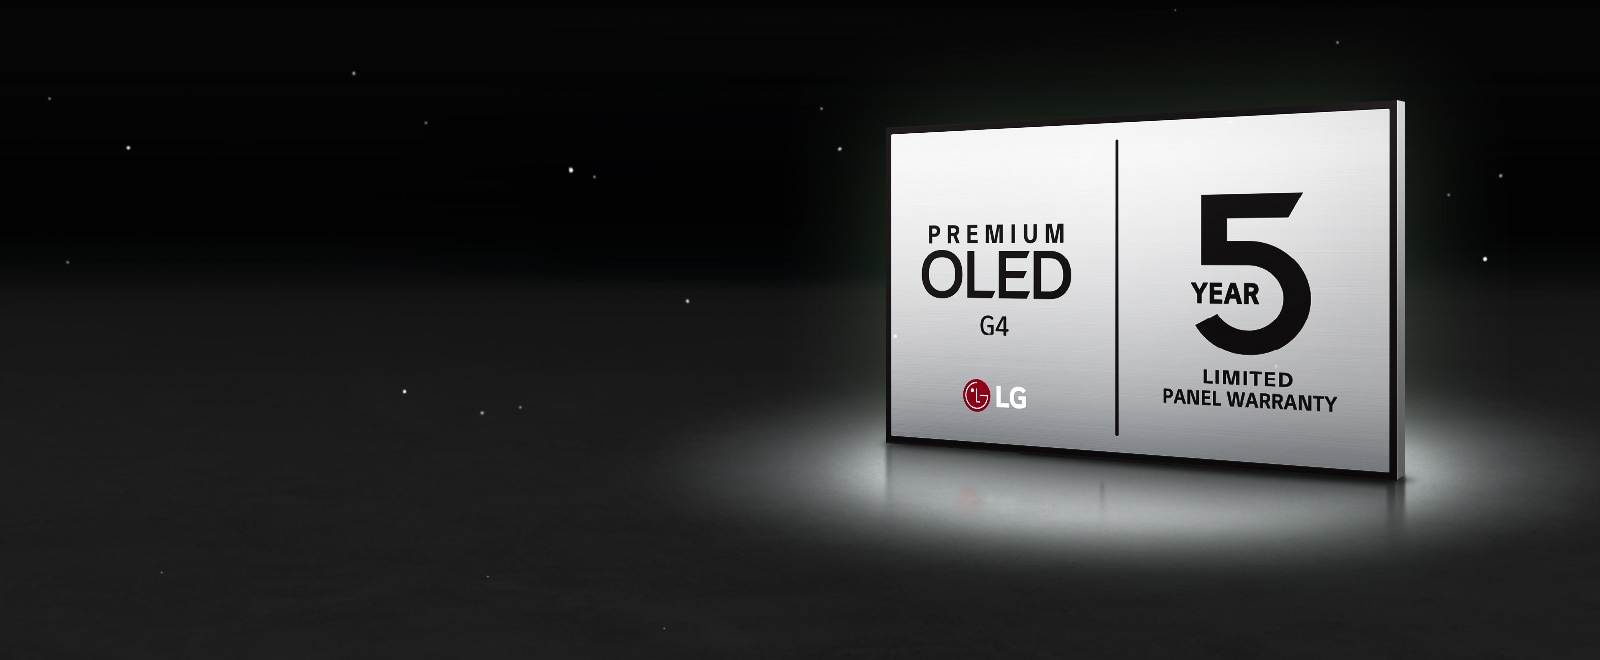 Logotip LG OLED Care+ in 5-letna garancija na plošči na črnem ozadju.